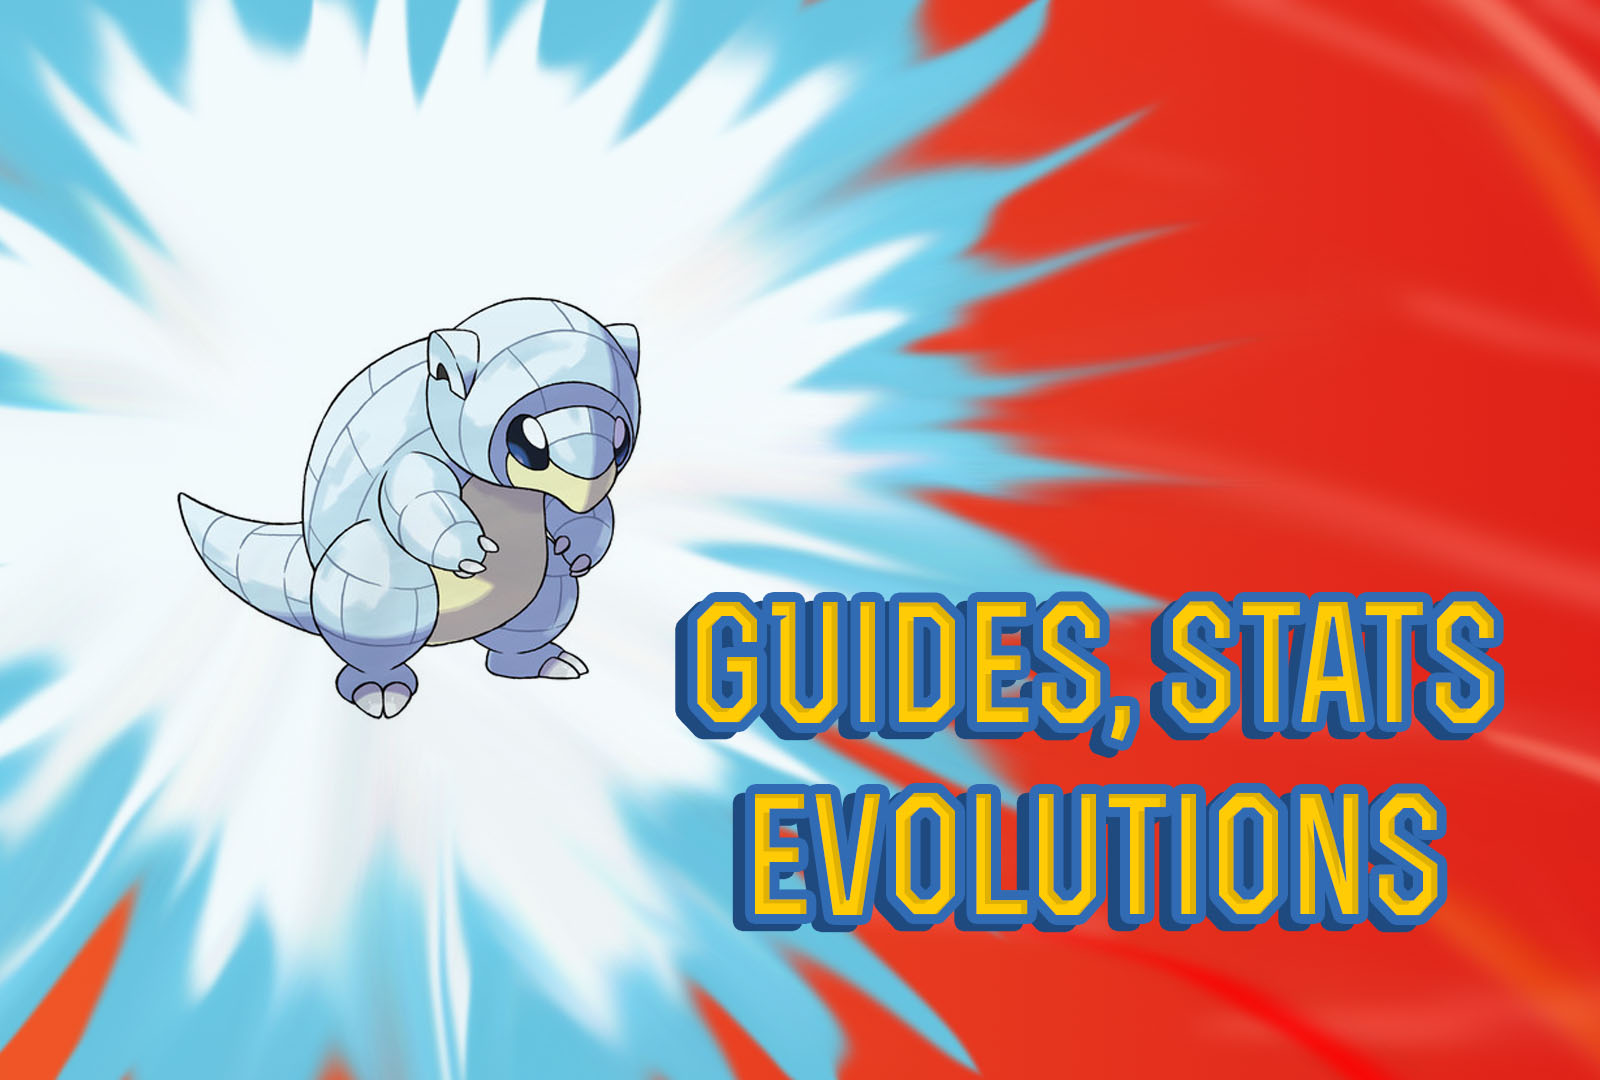 Pokemon Let's Go Alolan Sandshrew Guide, Stats & Evolutions